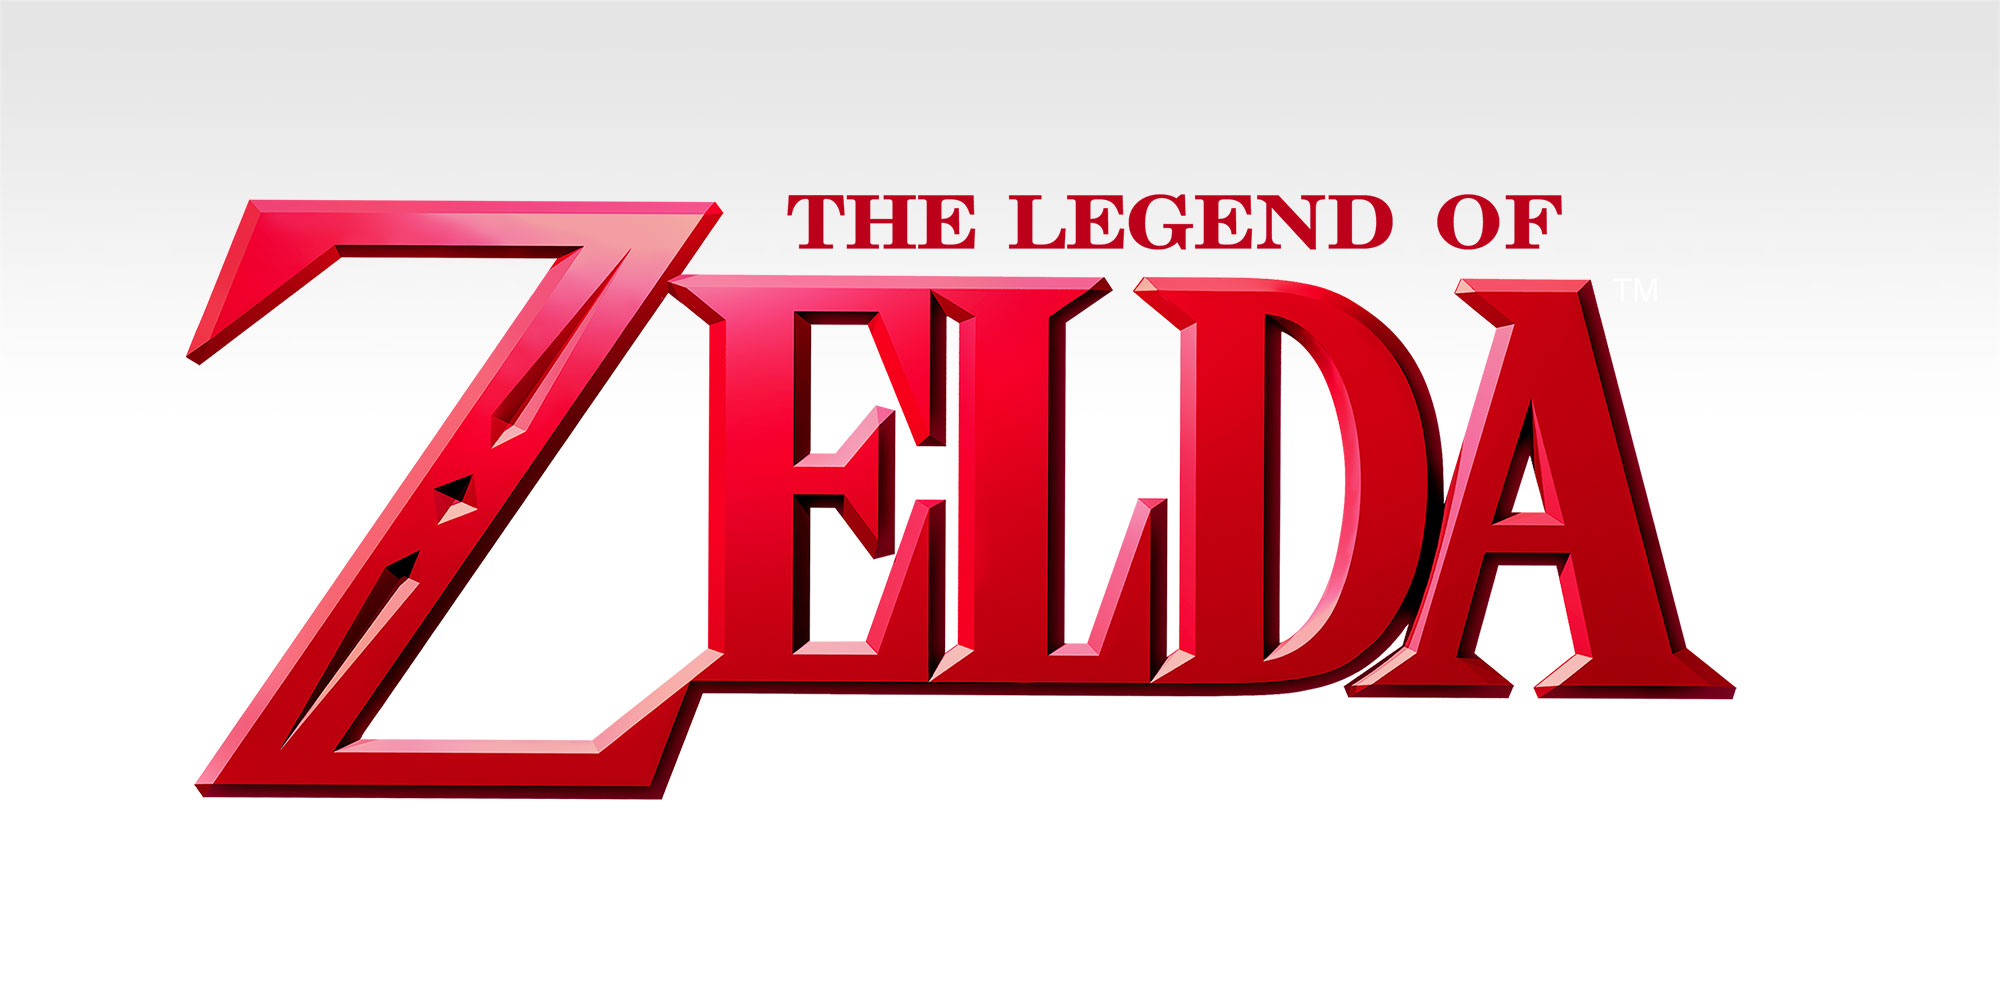 Entra nos bastidores de The Legend of Zelda com ilustrações exclusivas do jogo!